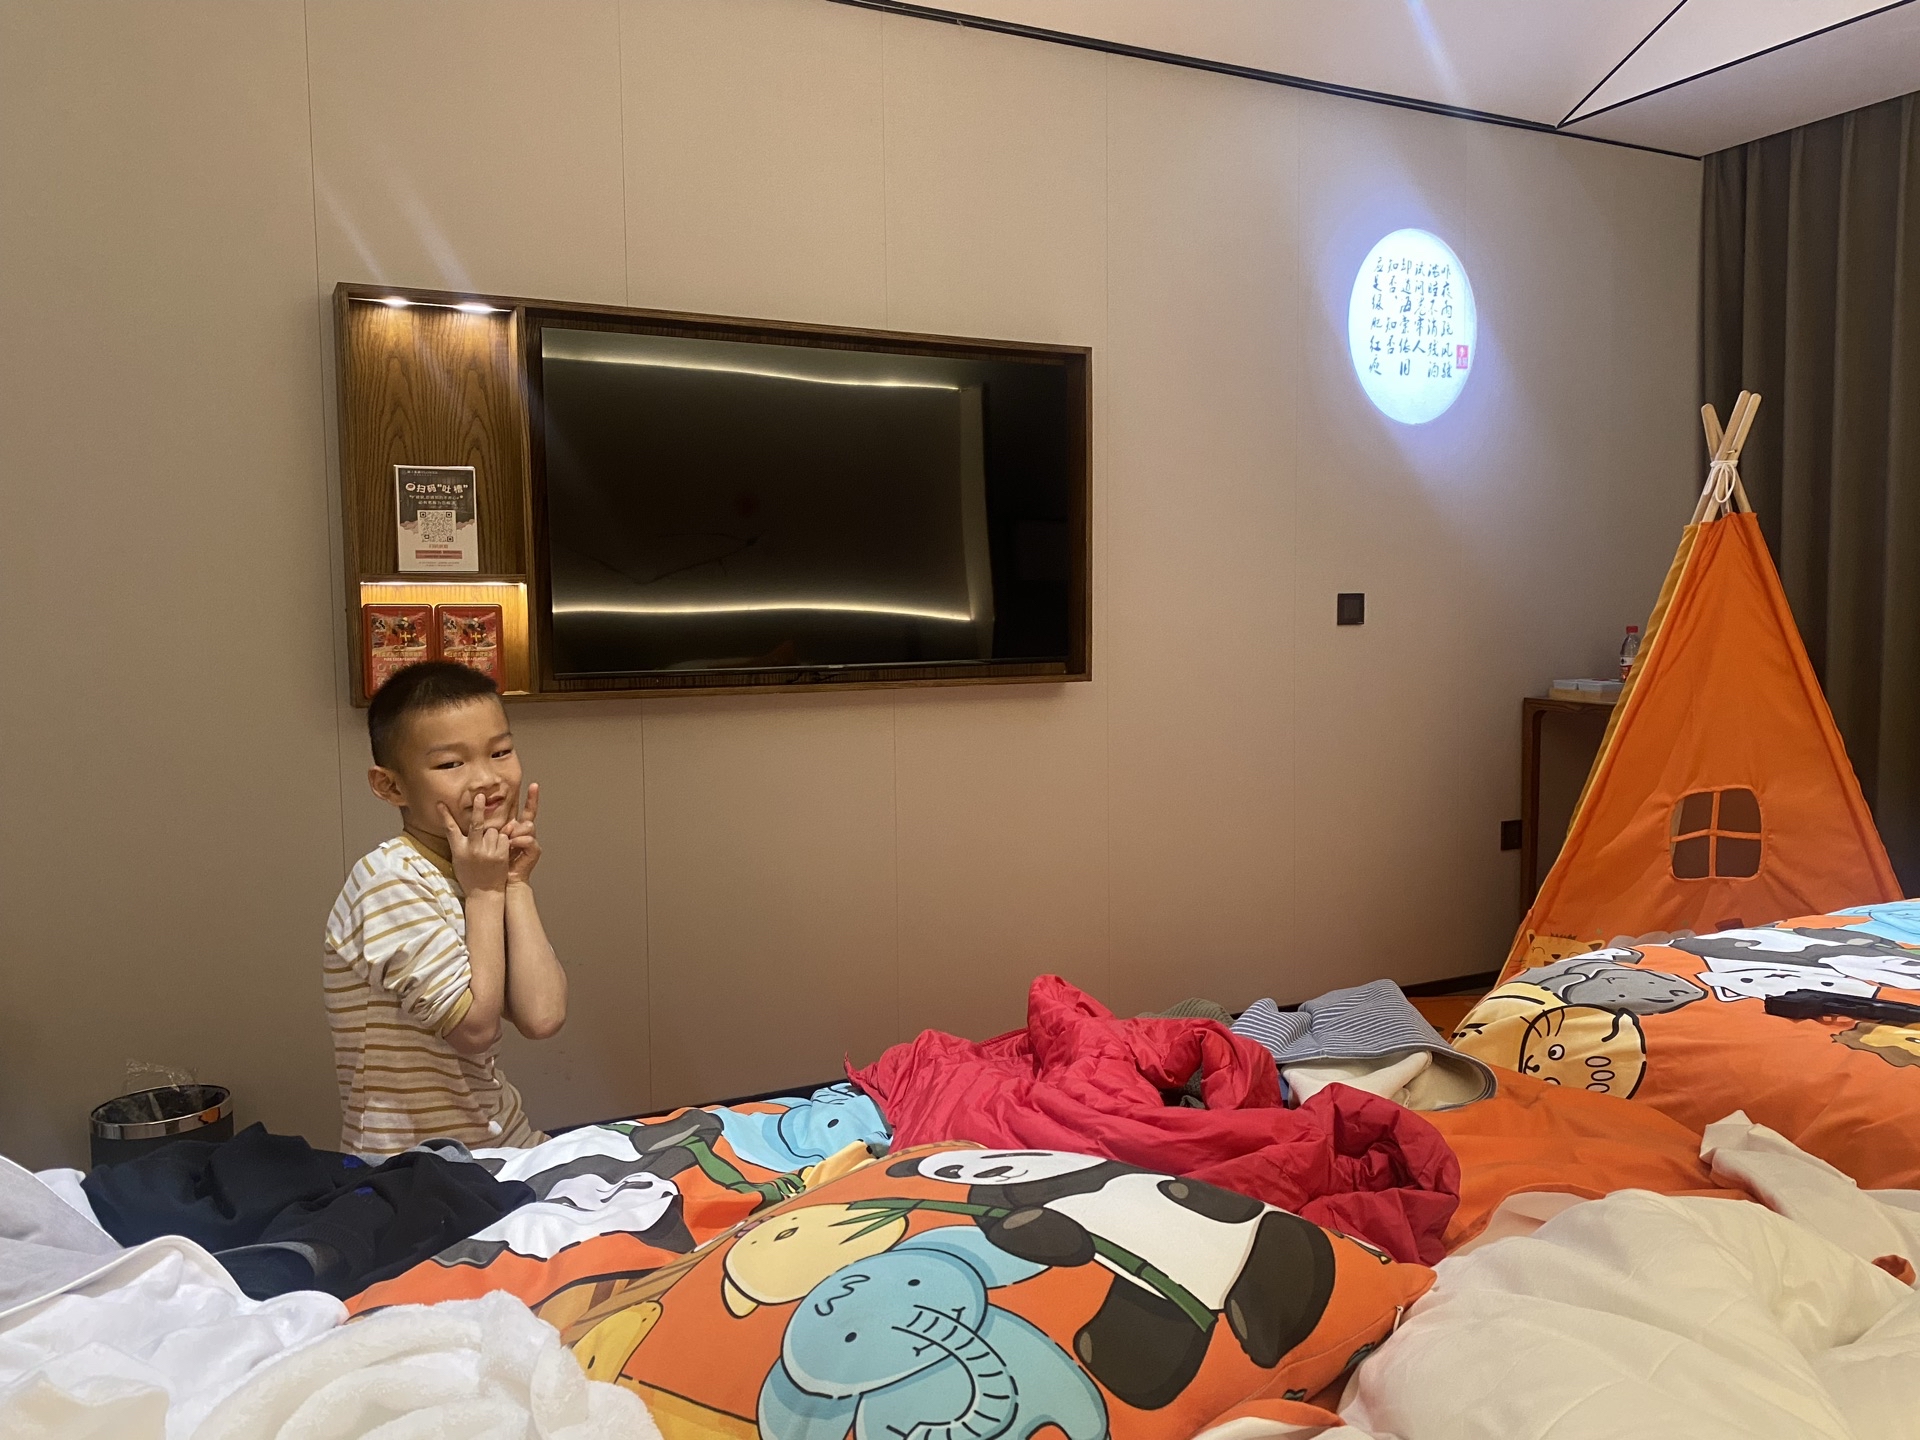 房间很宽敞，特地定的亲子房，布置的也很童趣，孩子看见三角帐篷很兴奋，要不是我拦着，他都打算睡在帐篷里